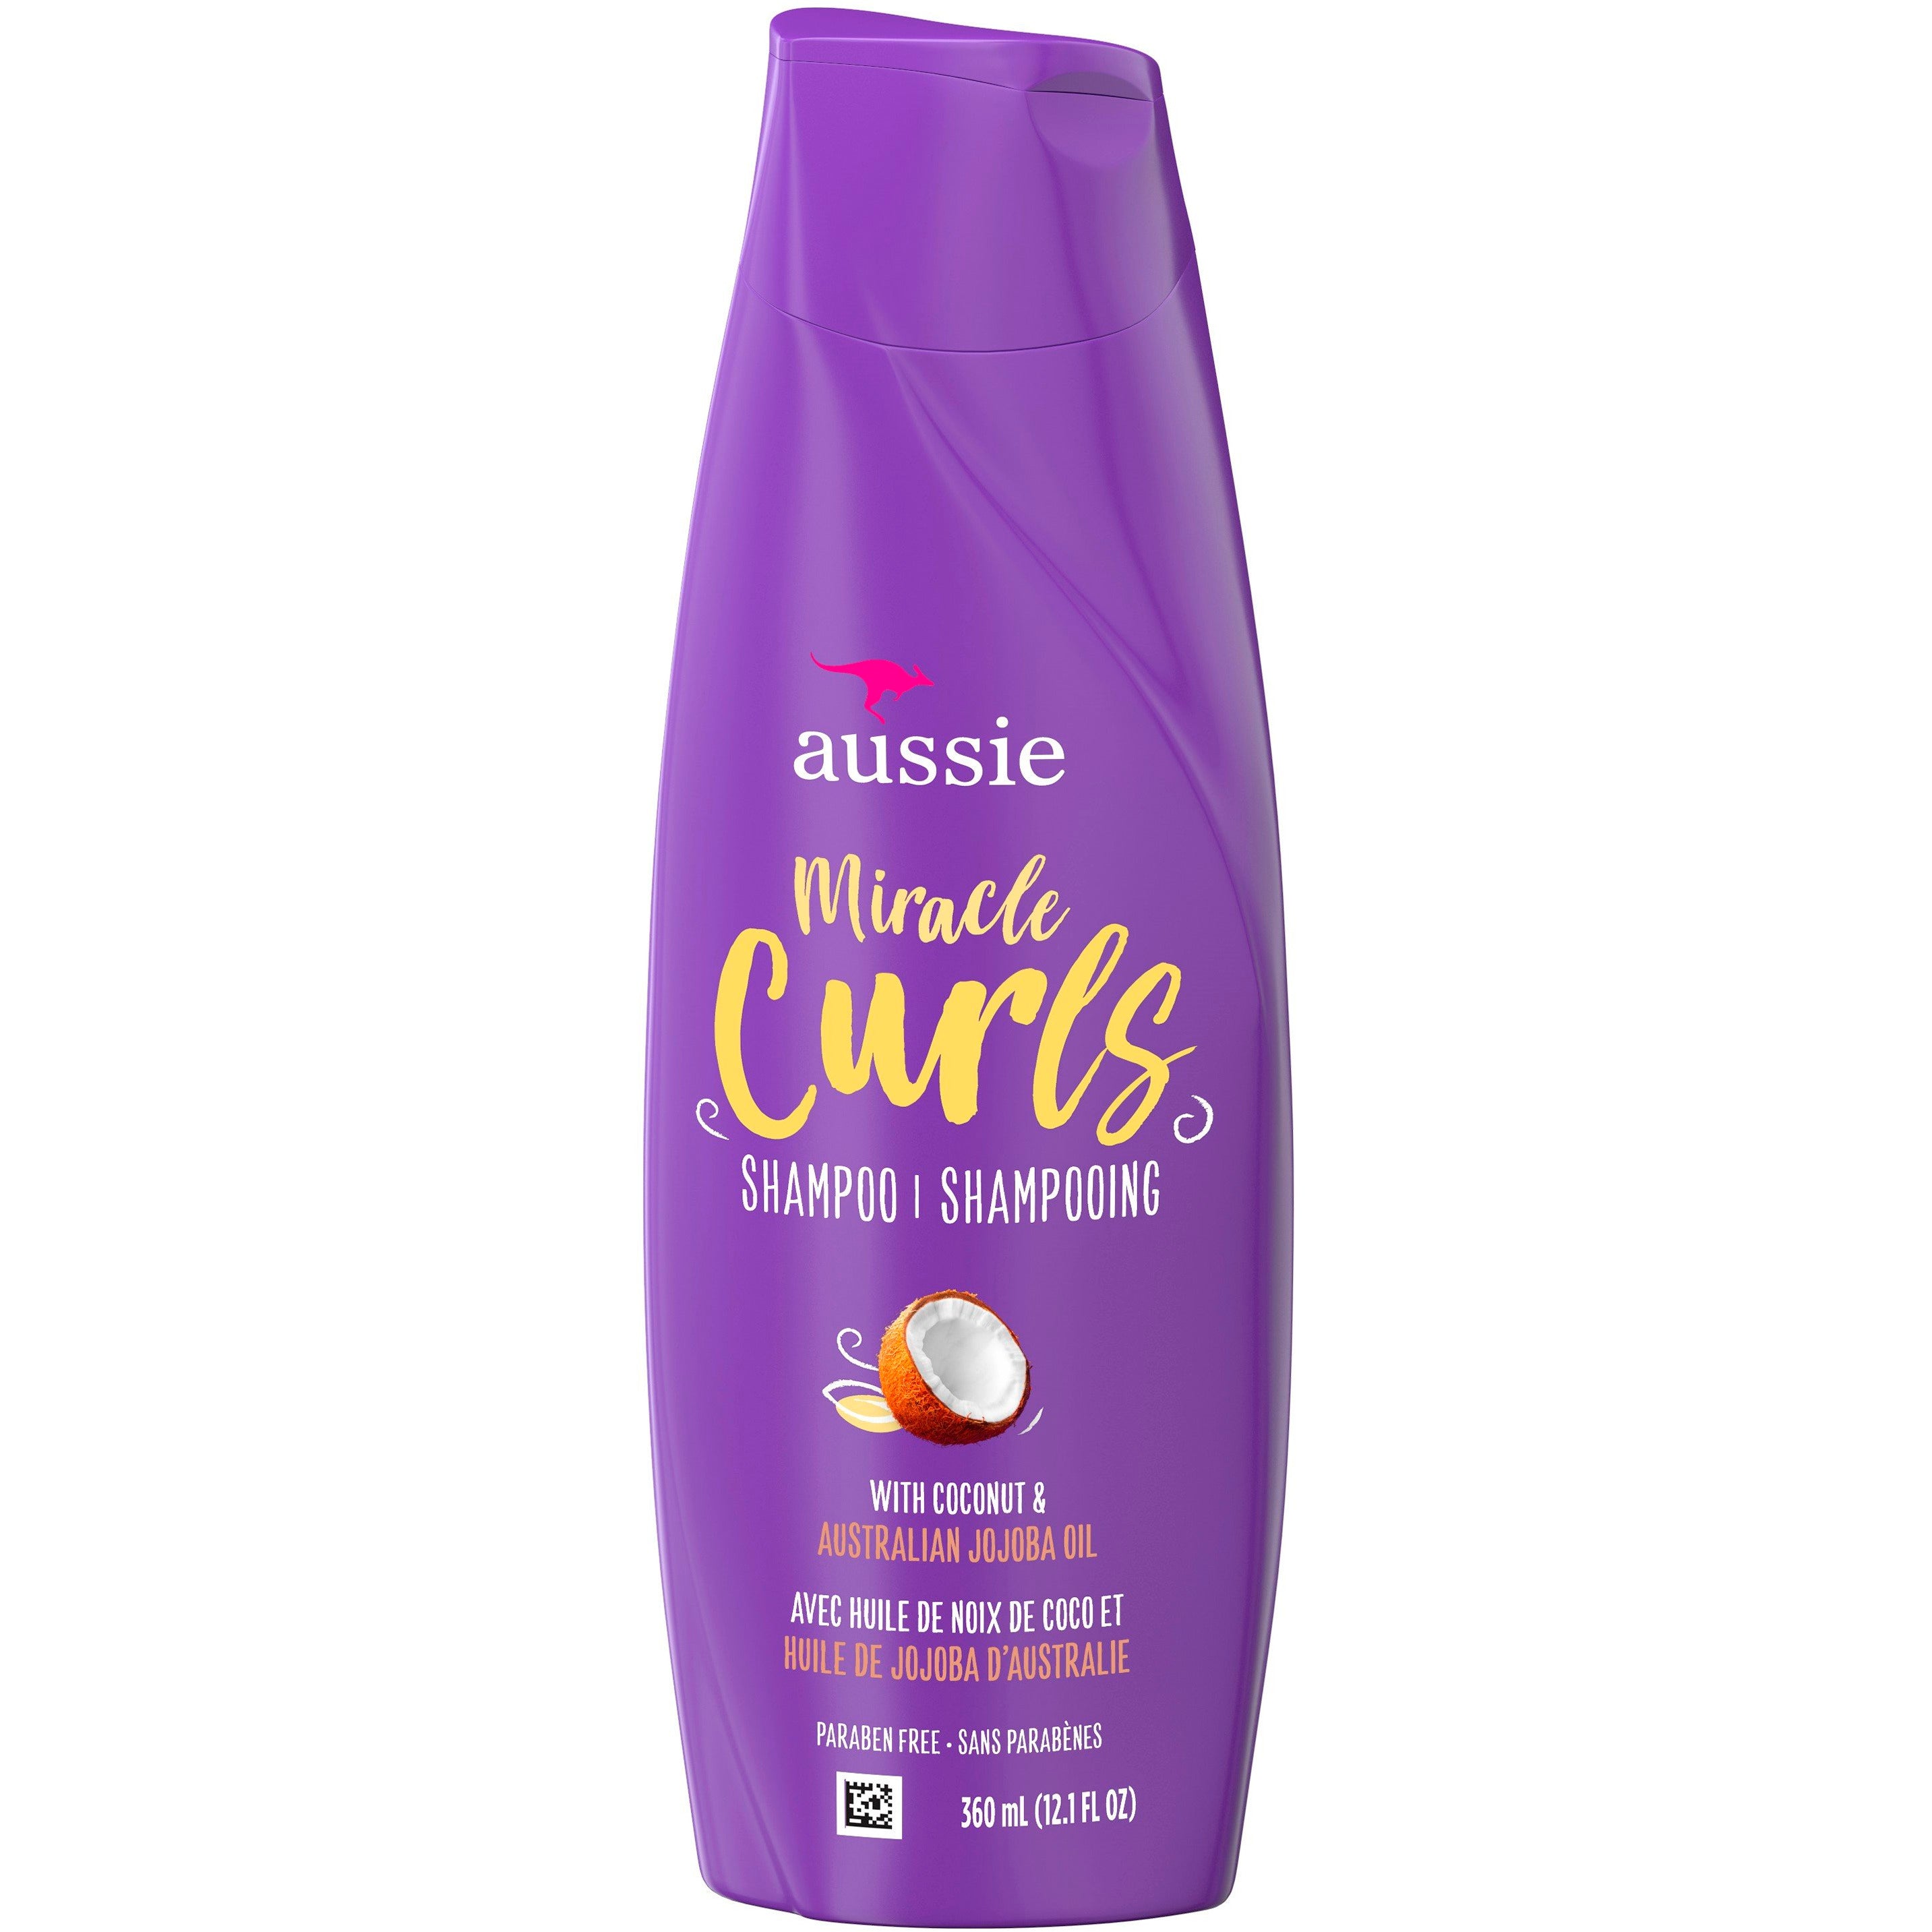 Aussie Miracle Curls Shampoo 12.1 Oz